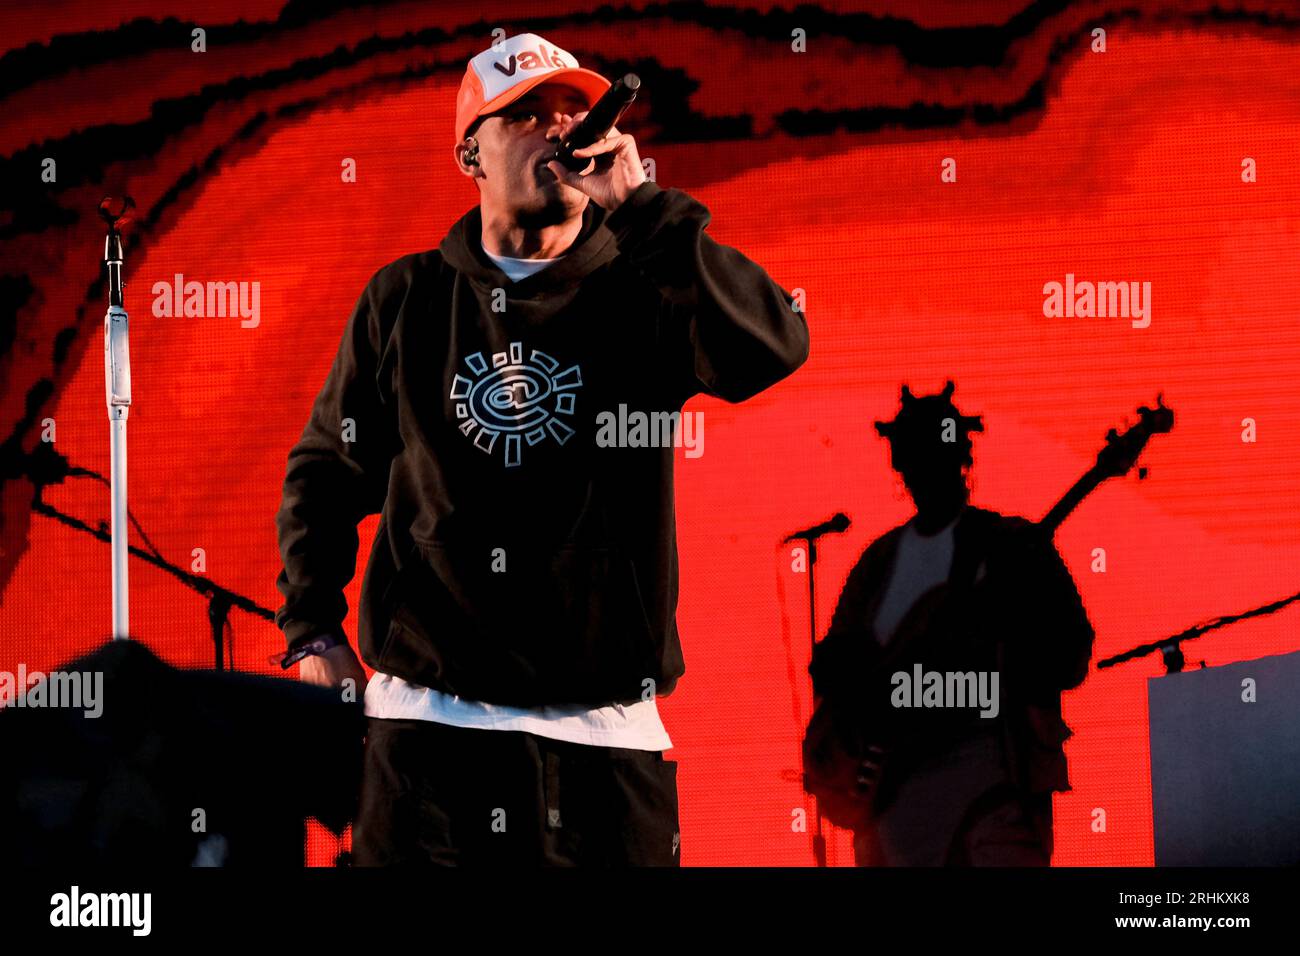 Il musicista hip hop inglese Benjamin Gerard Coyle-Larner, conosciuto professionalmente come Loyle Carner, si esibisce dal vivo sul palco del Boomtown Festival. Foto Stock